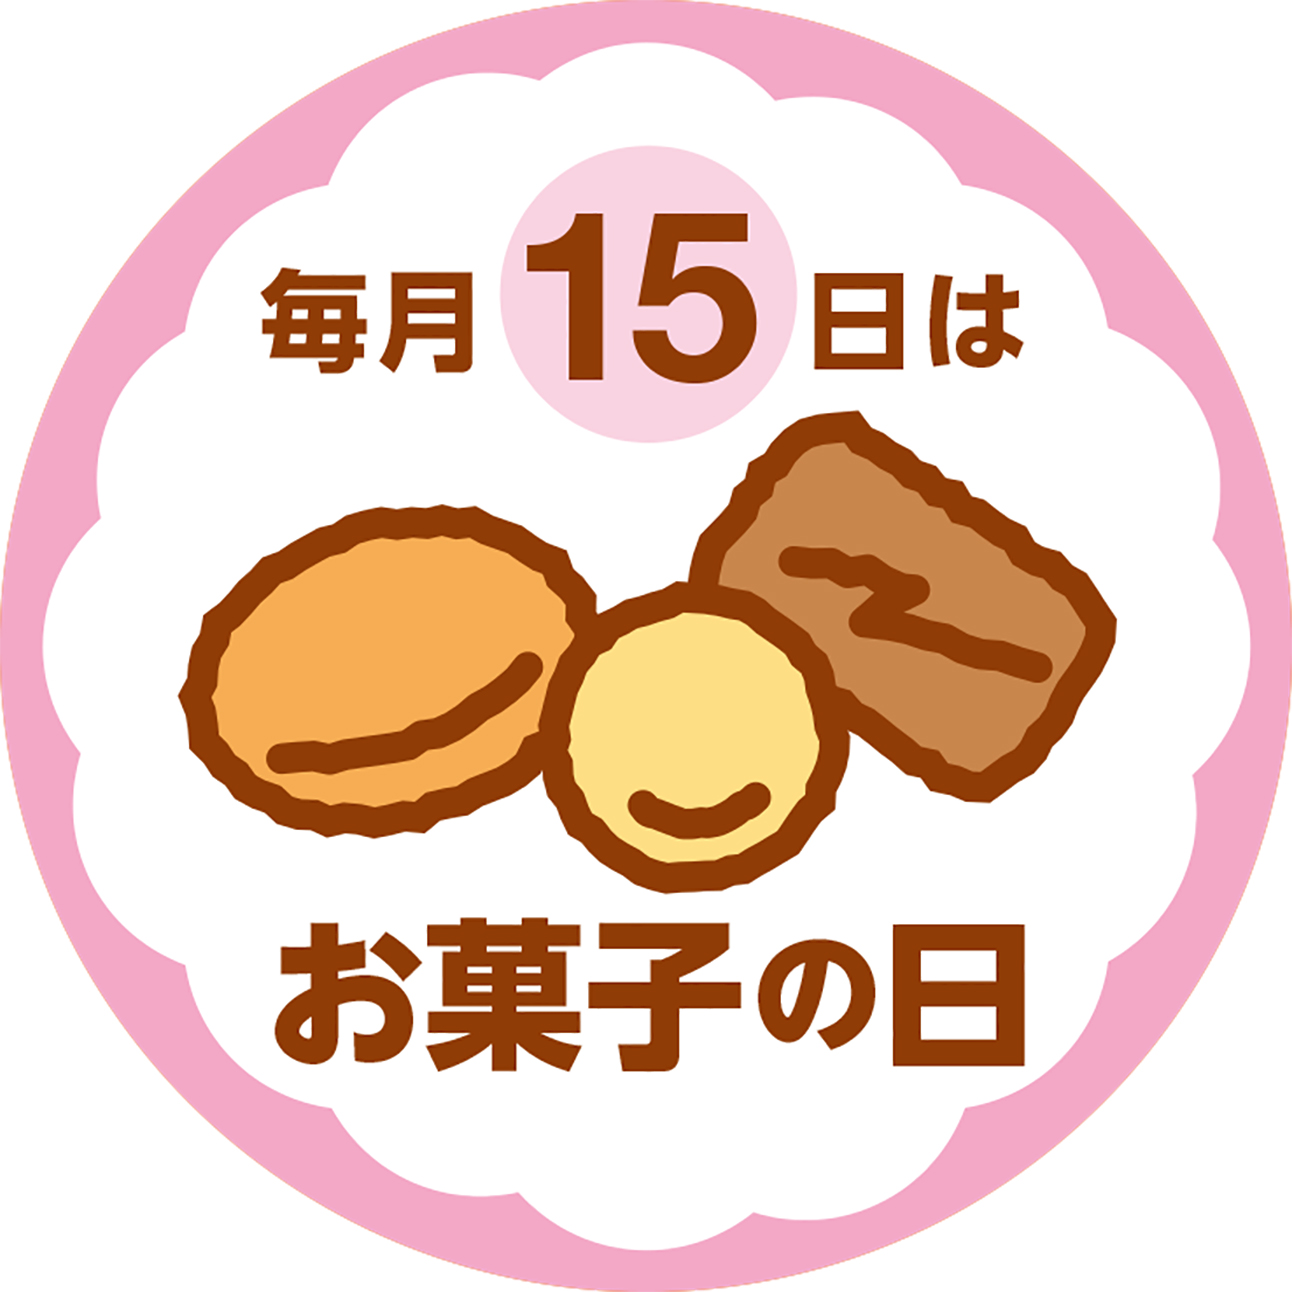 16年4月より 毎月15日に お菓子の日 キャンペーンを実施 株式会社銀座コージーコーナーのプレスリリース